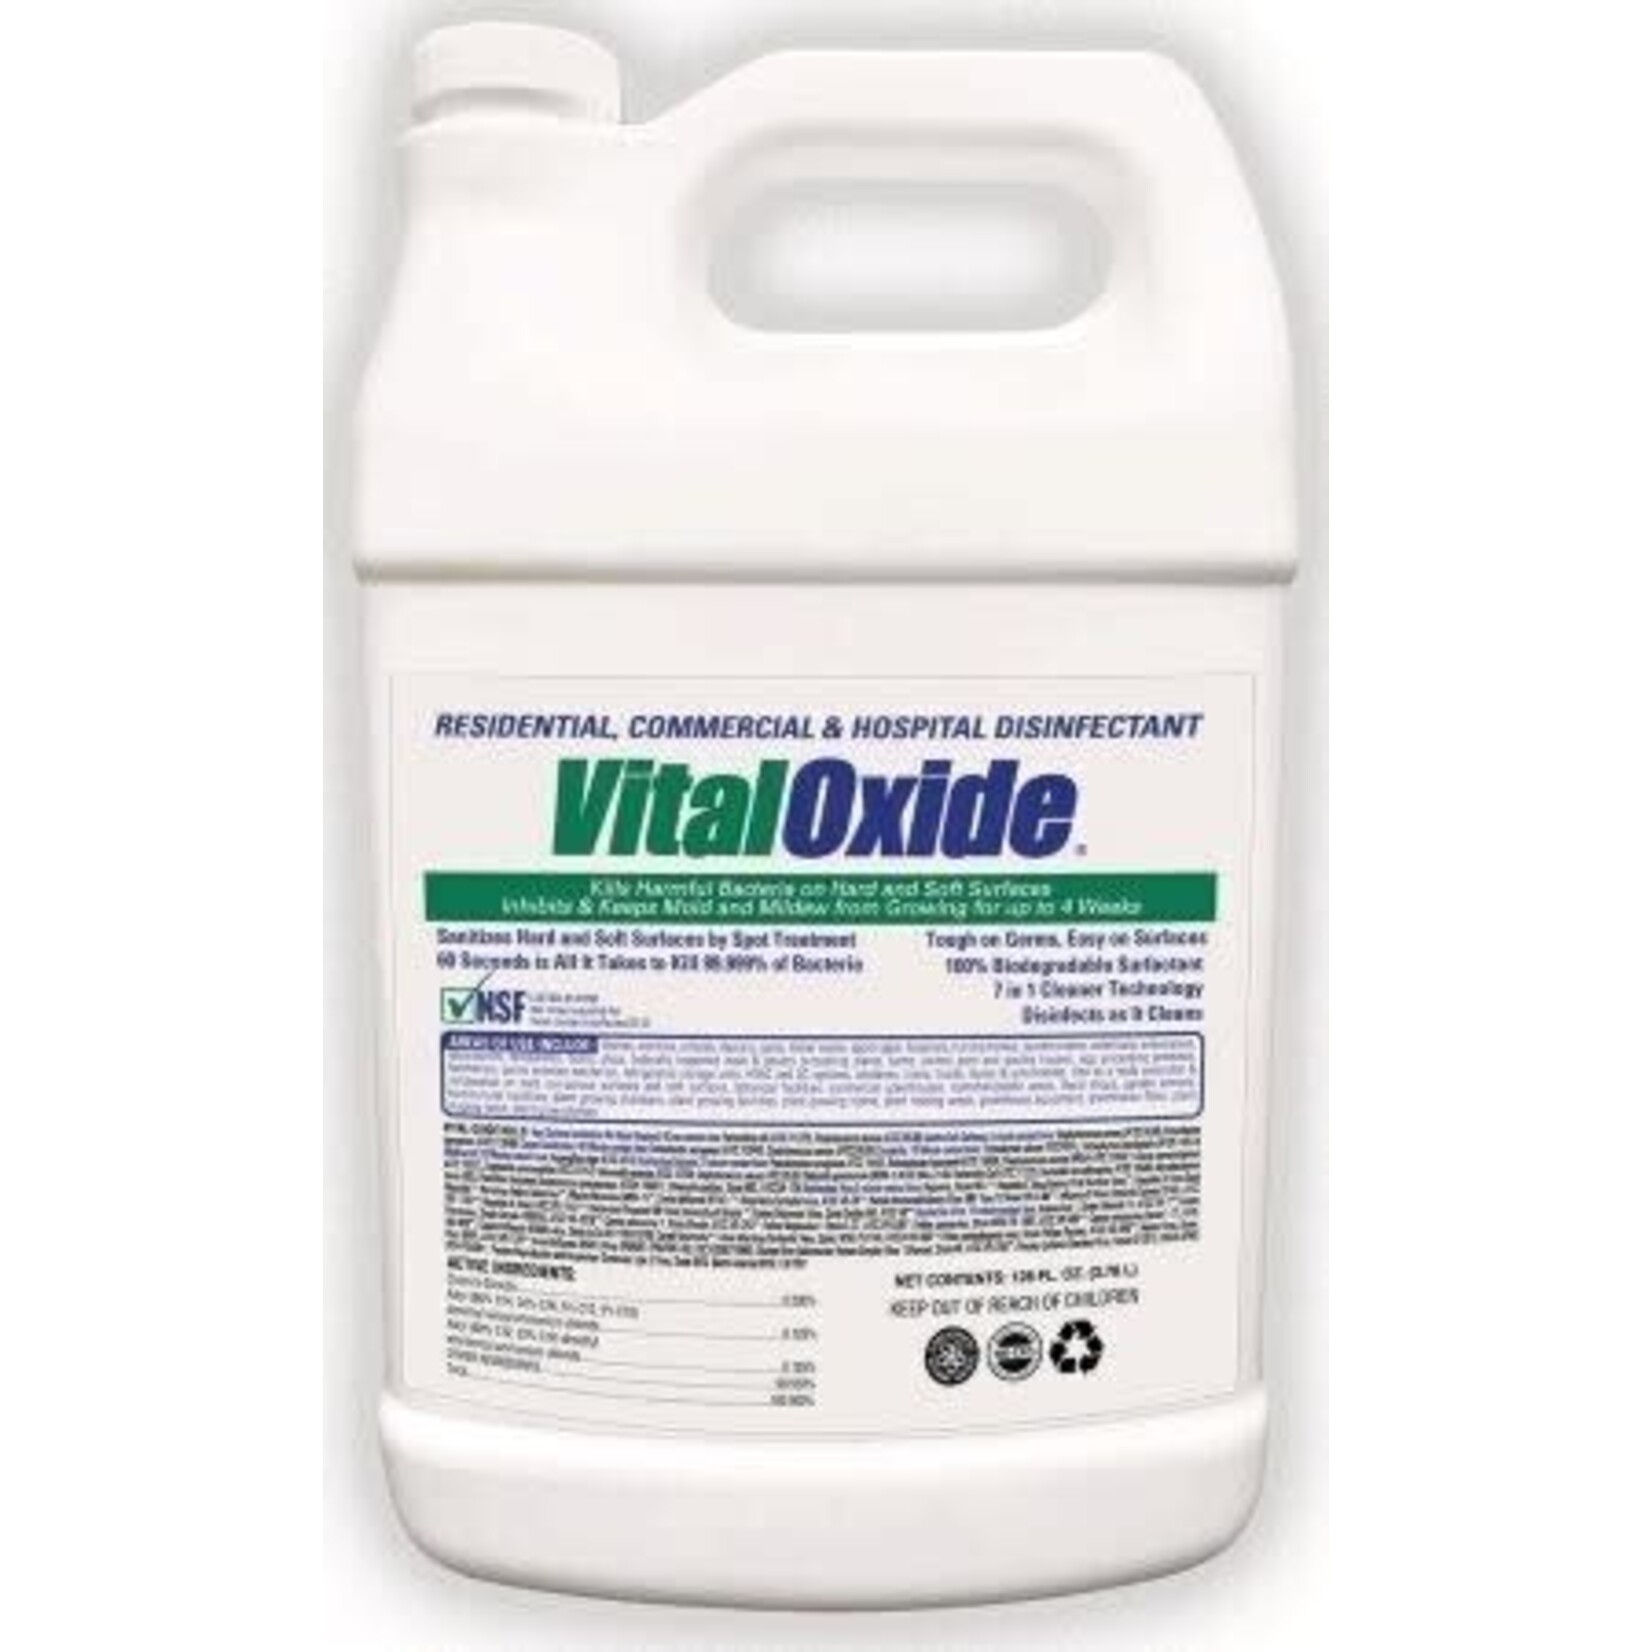 VitalOxide Residential, Commercial, & Hospital Disinfectant - 1 Gal.